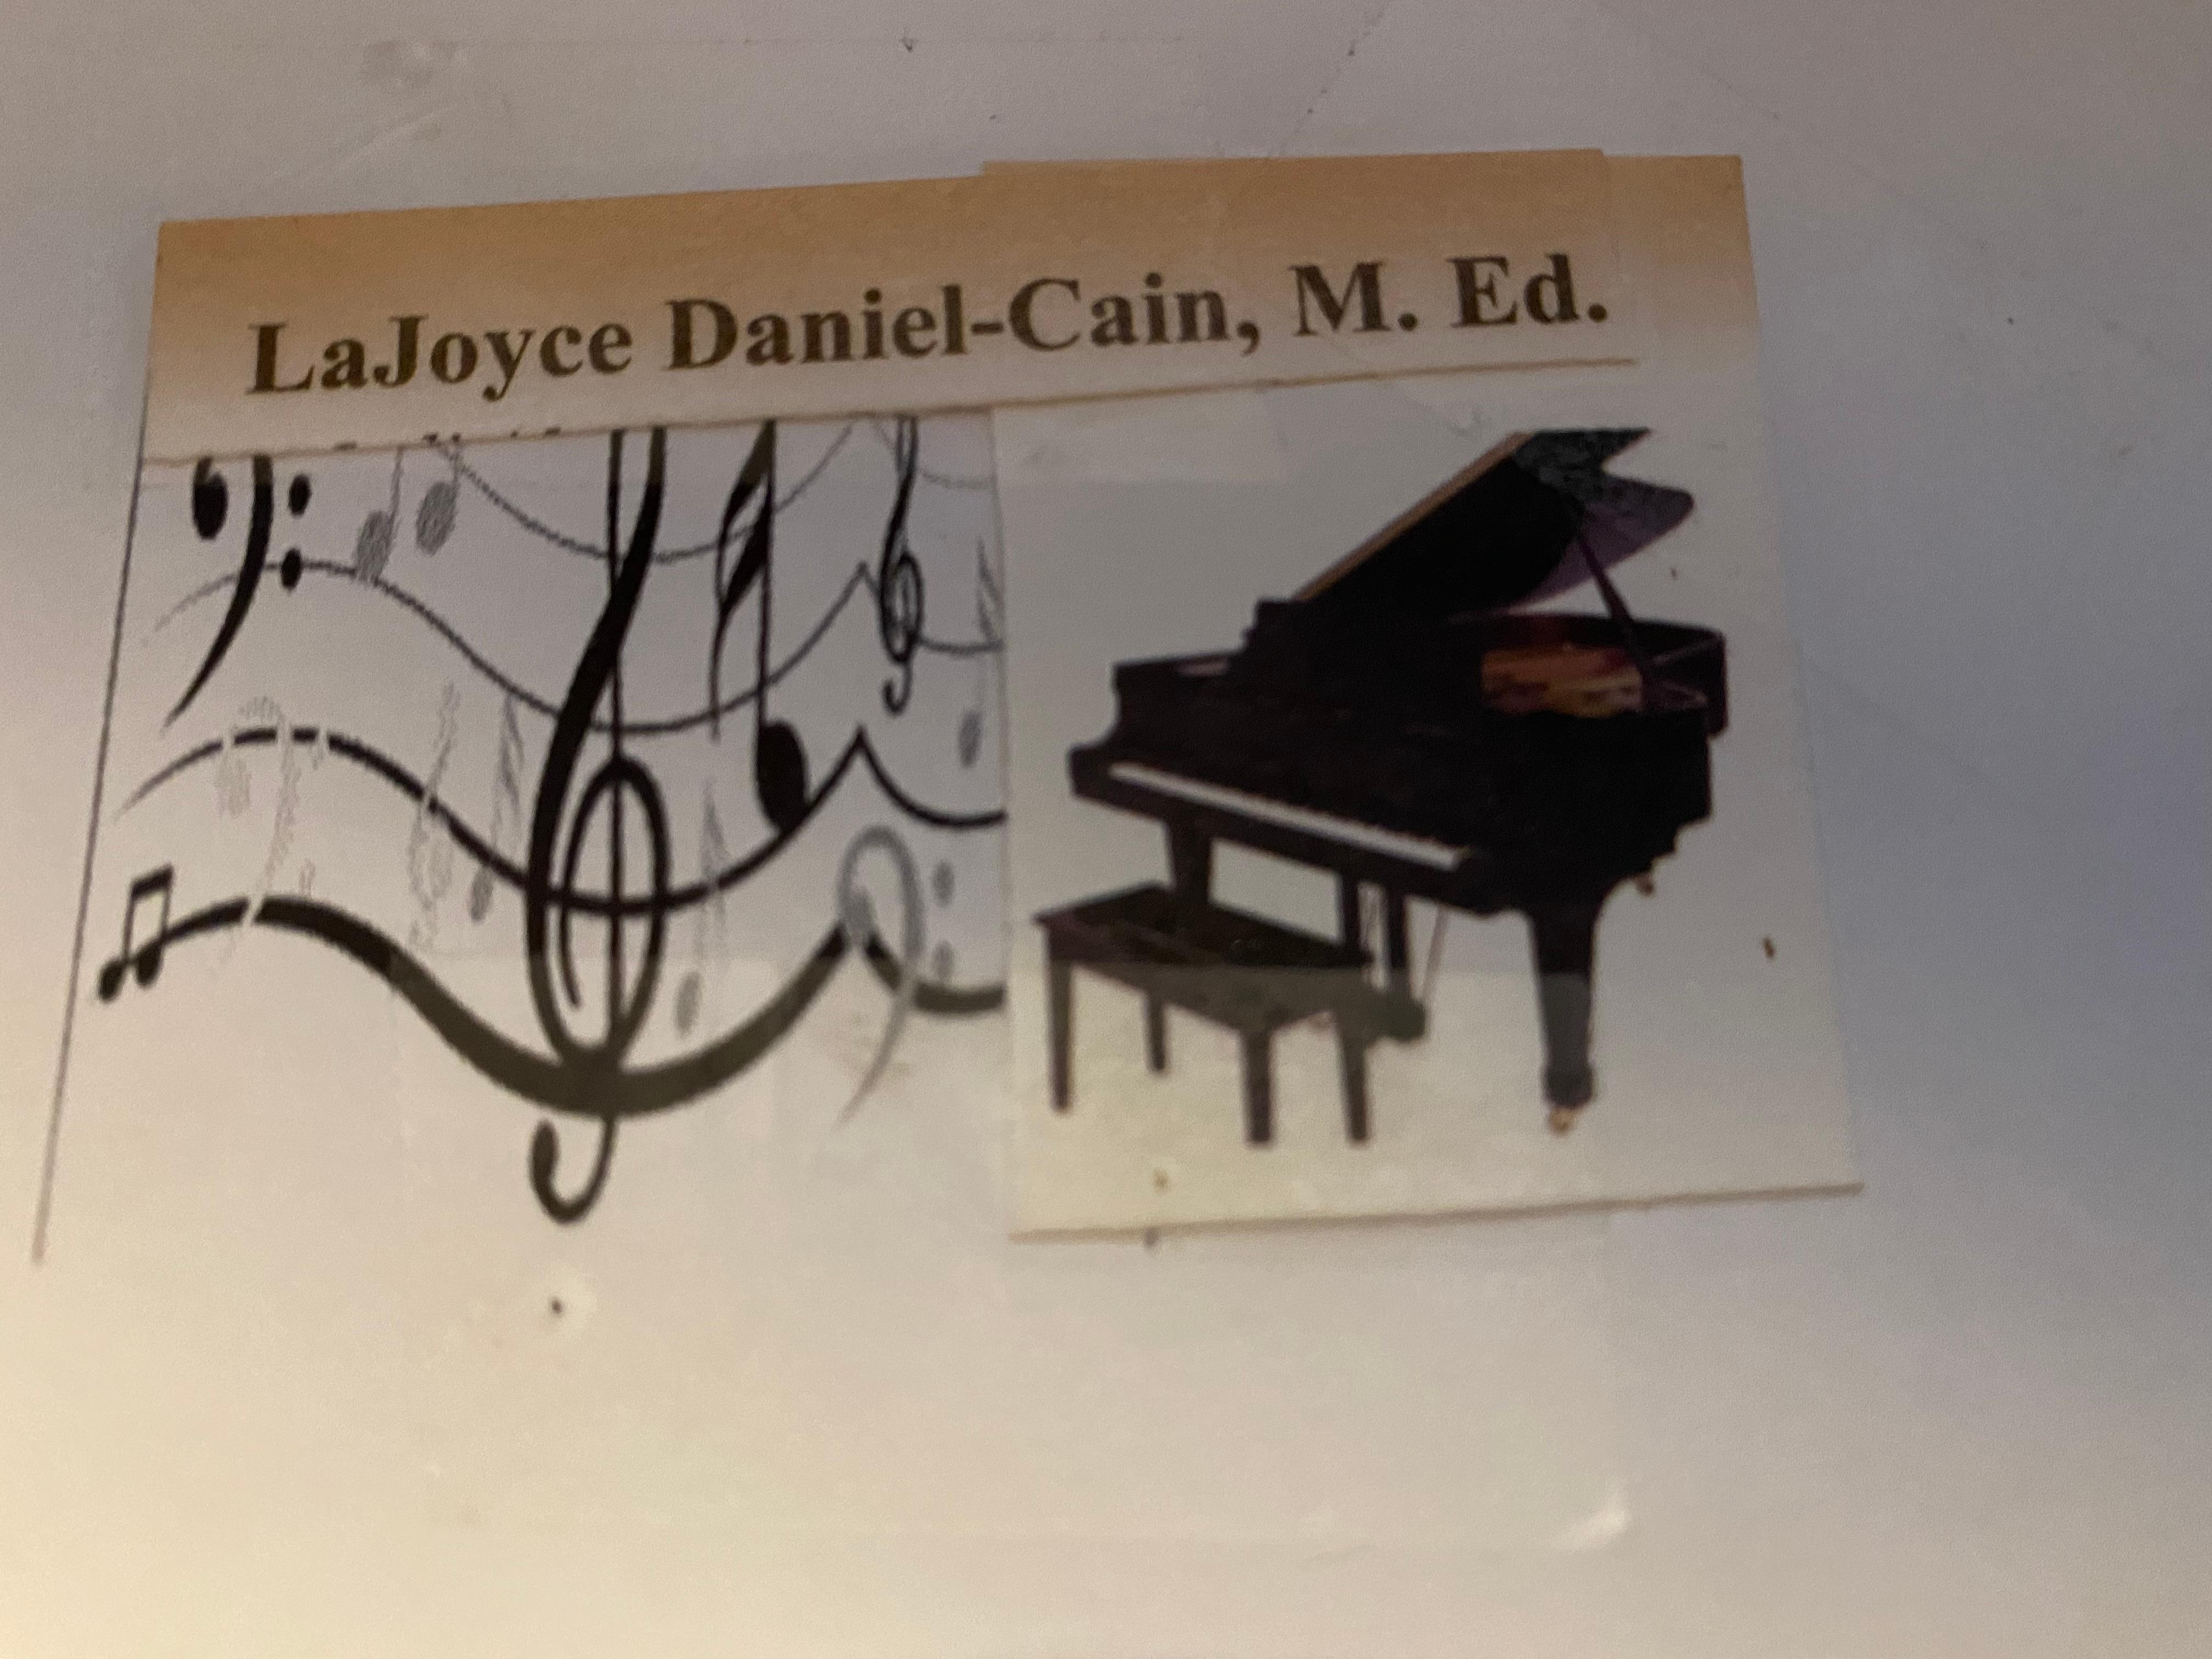 LaJoyce Daniel-Cain logo